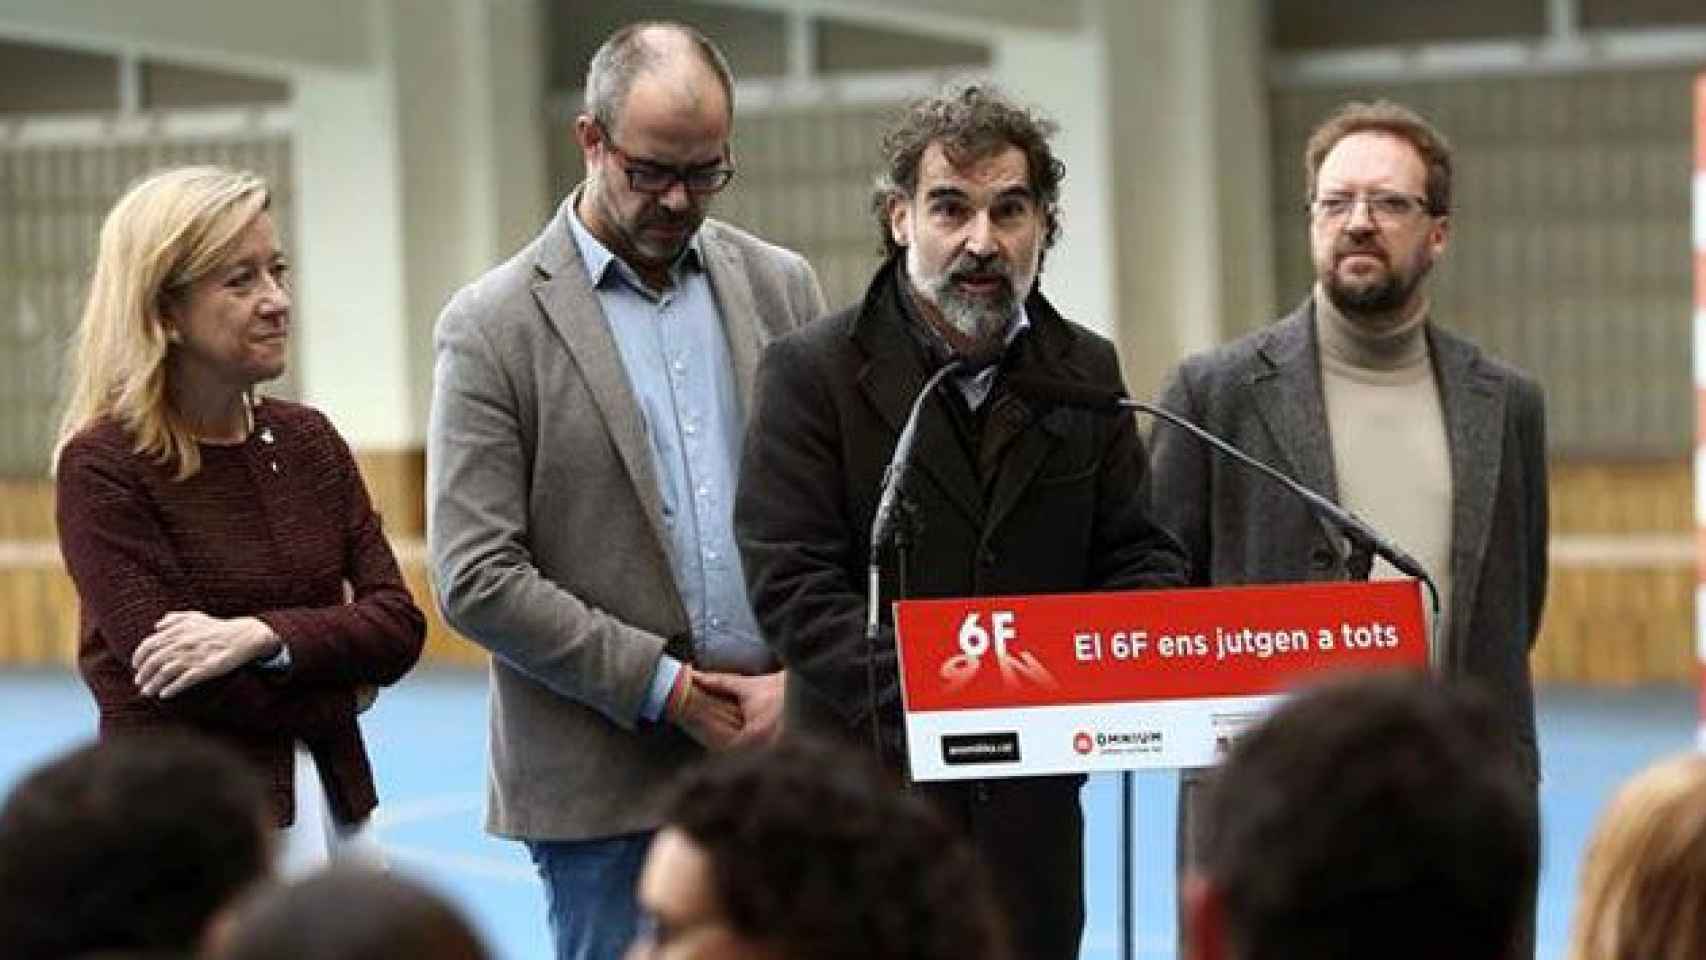 Neus Lloveras (AMI), Miquel Buch (ACM), Jordi Cuixart (Òmnium Cultural) y Enric Blanes (ANC), que ahora habla de la Constitución / EFE